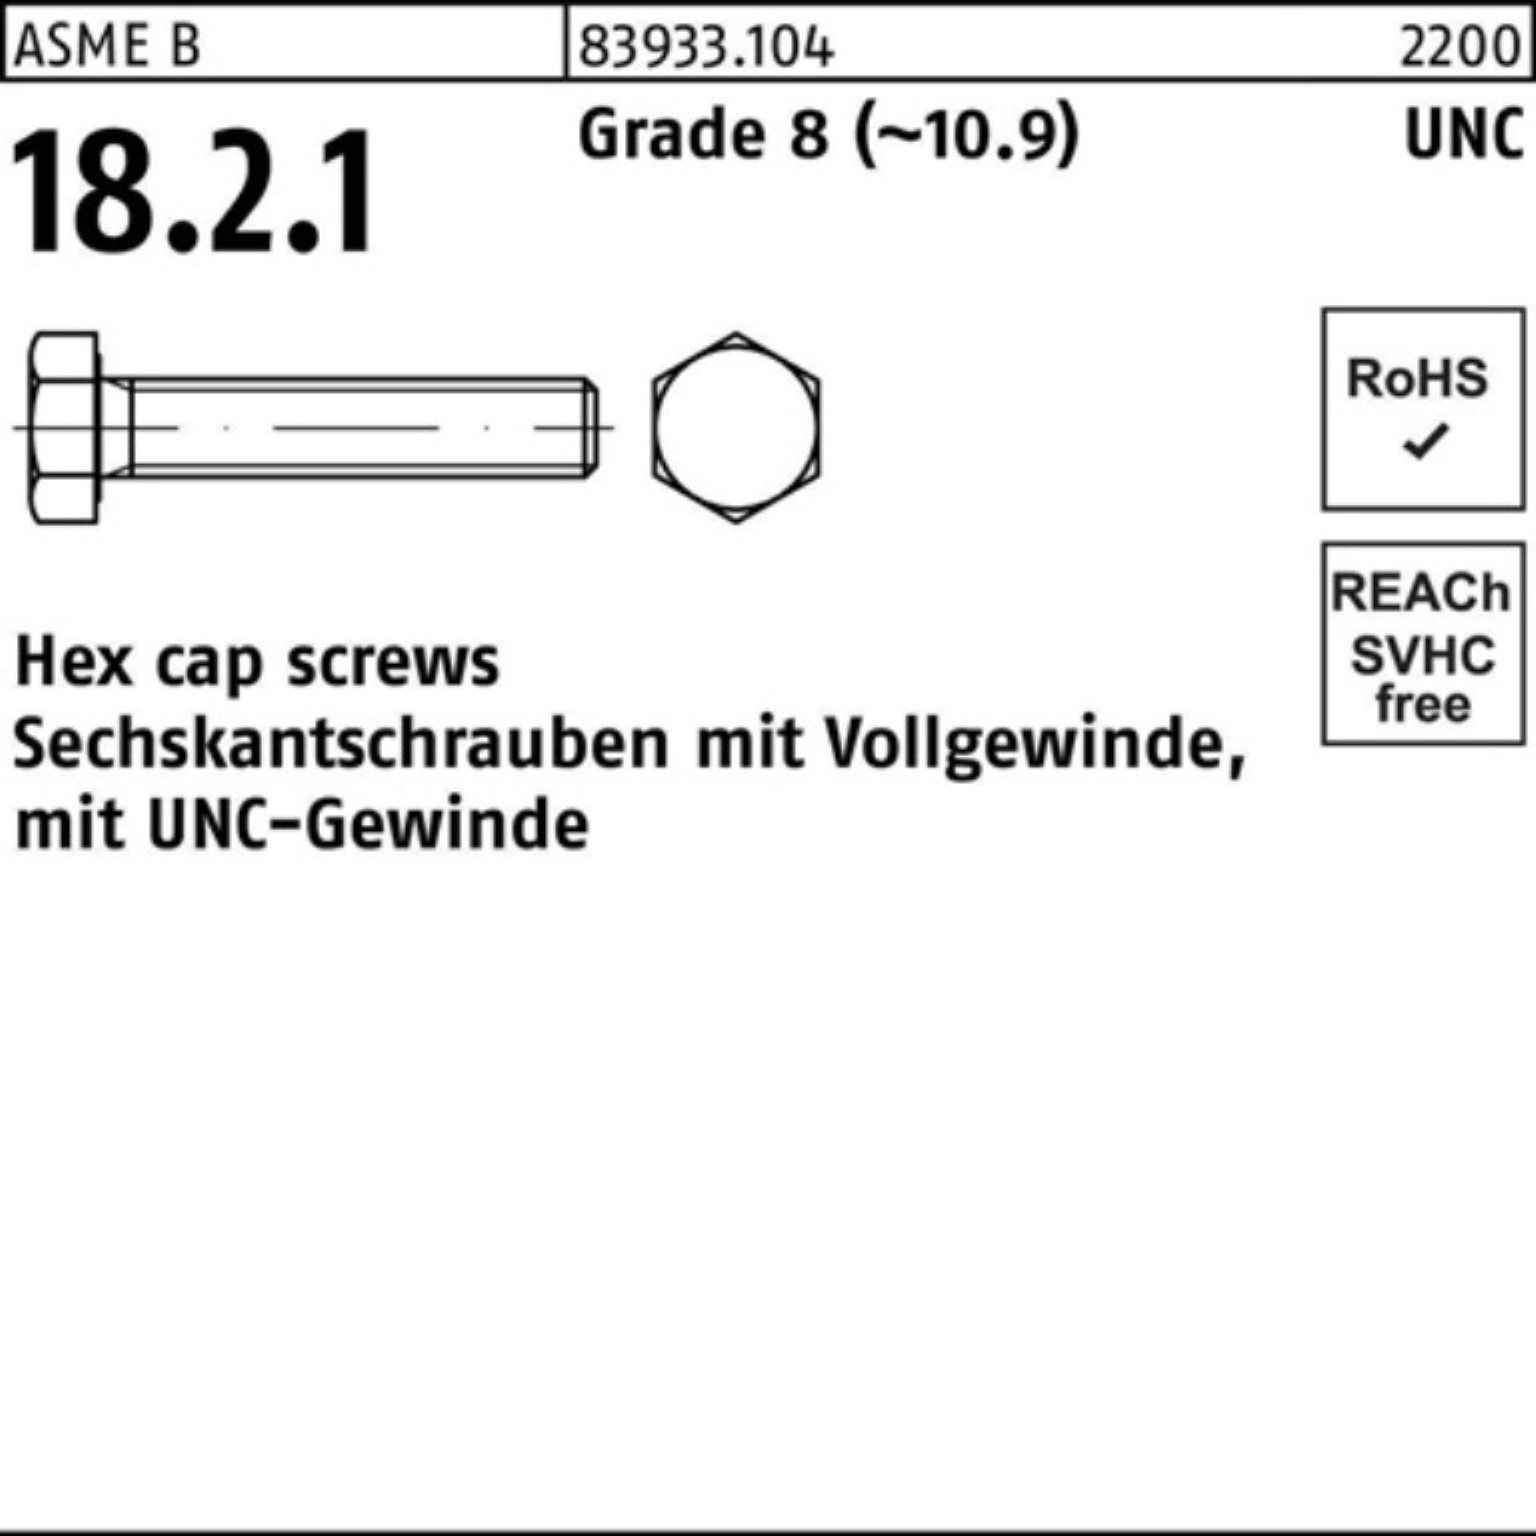 Reyher Sechskantschraube 100er Pack Sechskantschraube R 83933 UNC-Gewinde VG 1/2x 7/8 Grade 8